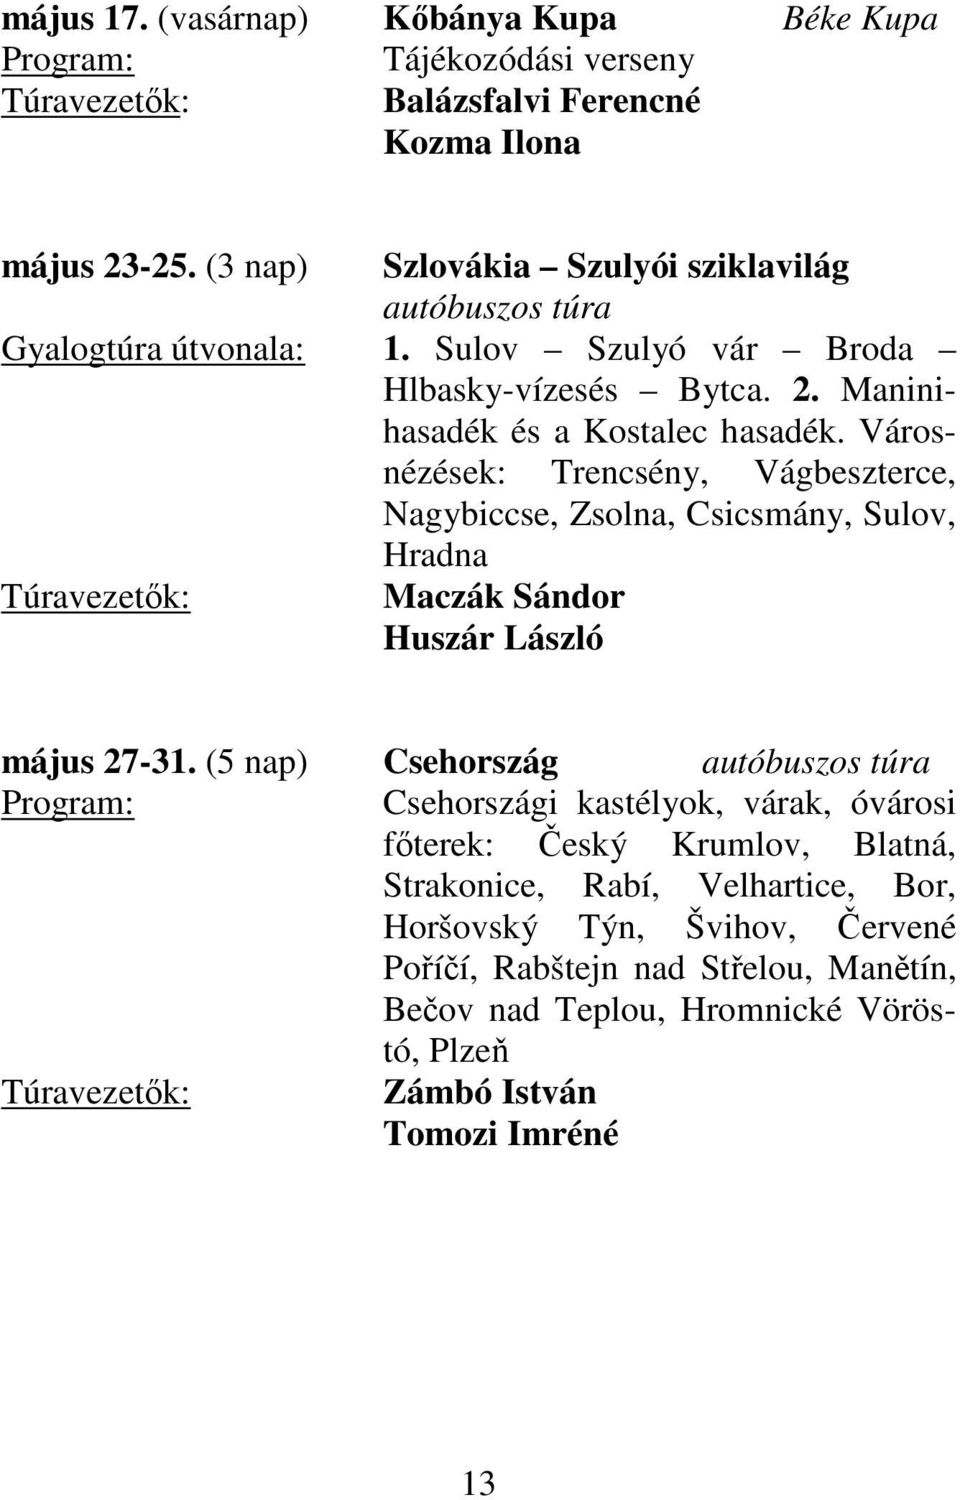 Városnézések: Trencsény, Vágbeszterce, Nagybiccse, Zsolna, Csicsmány, Sulov, Hradna Huszár László május 27-31.